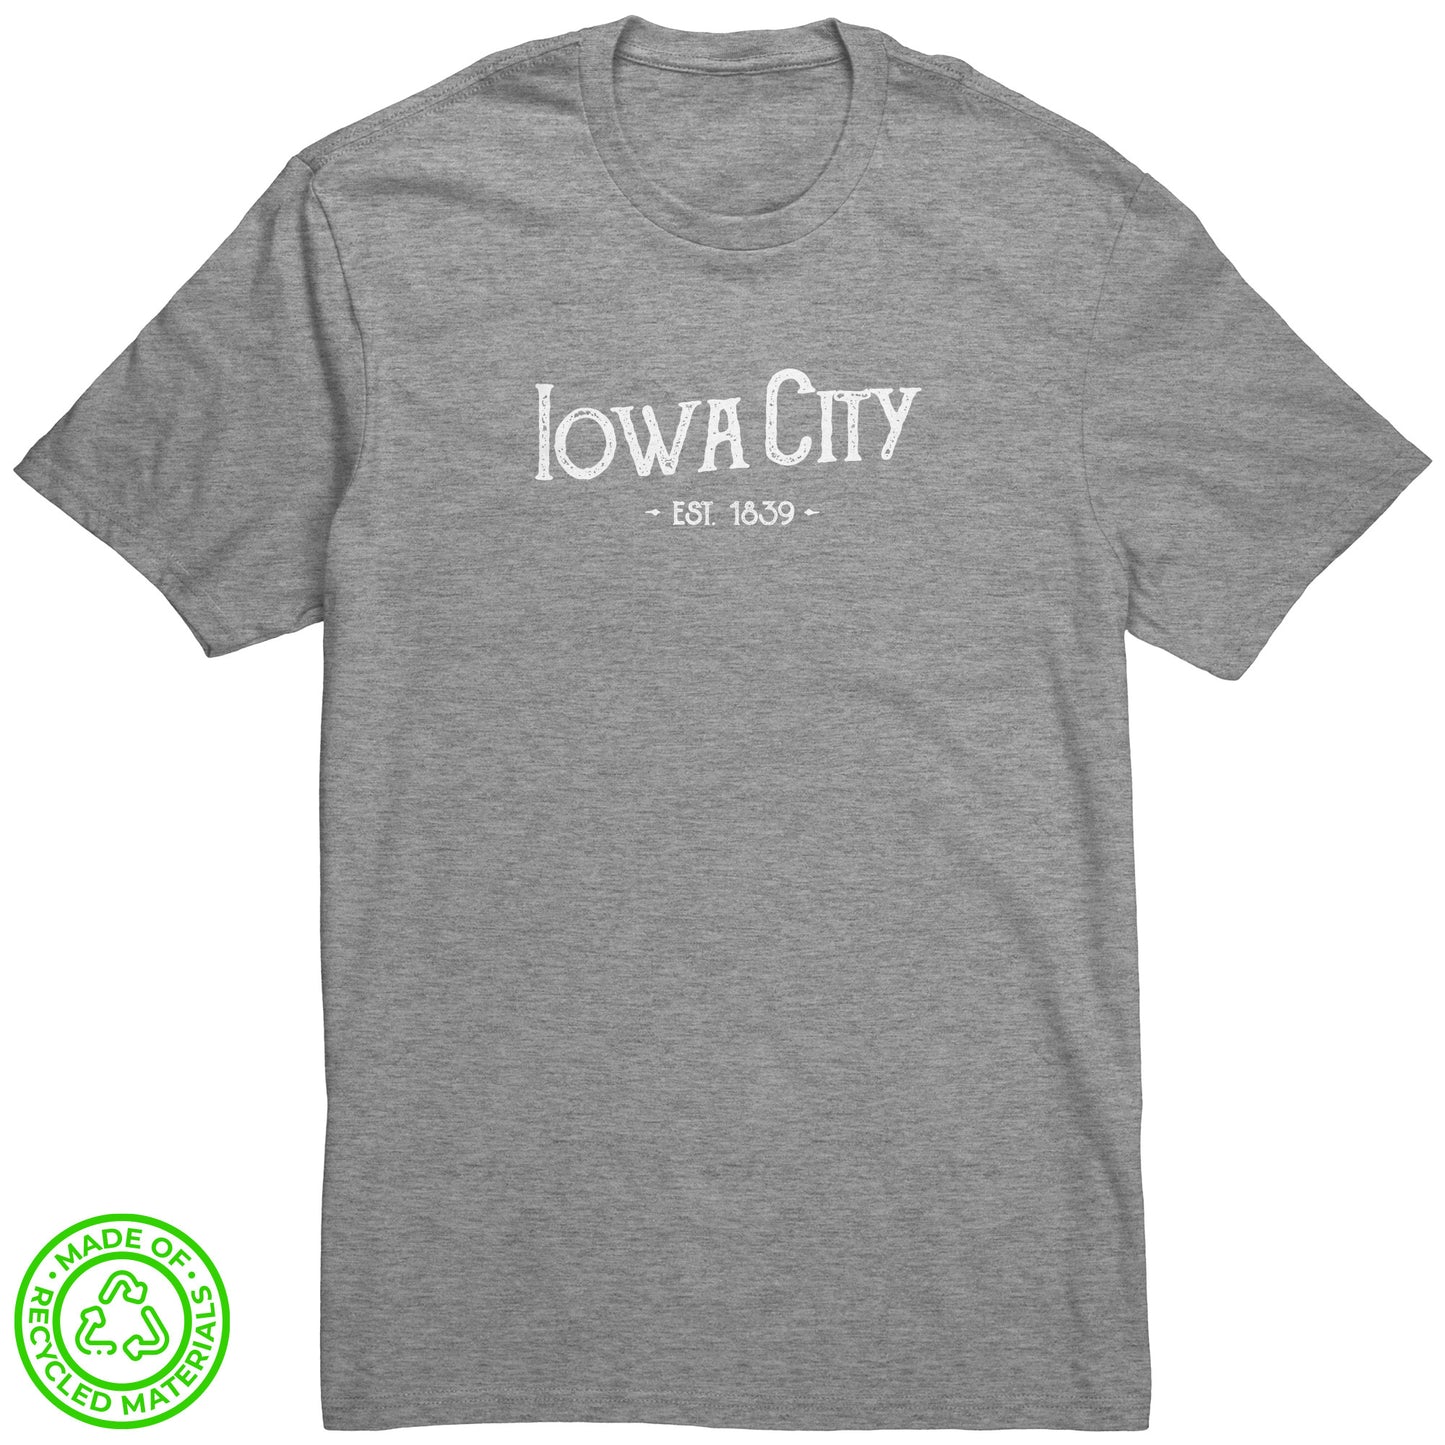 Iowa City Hometown Tee